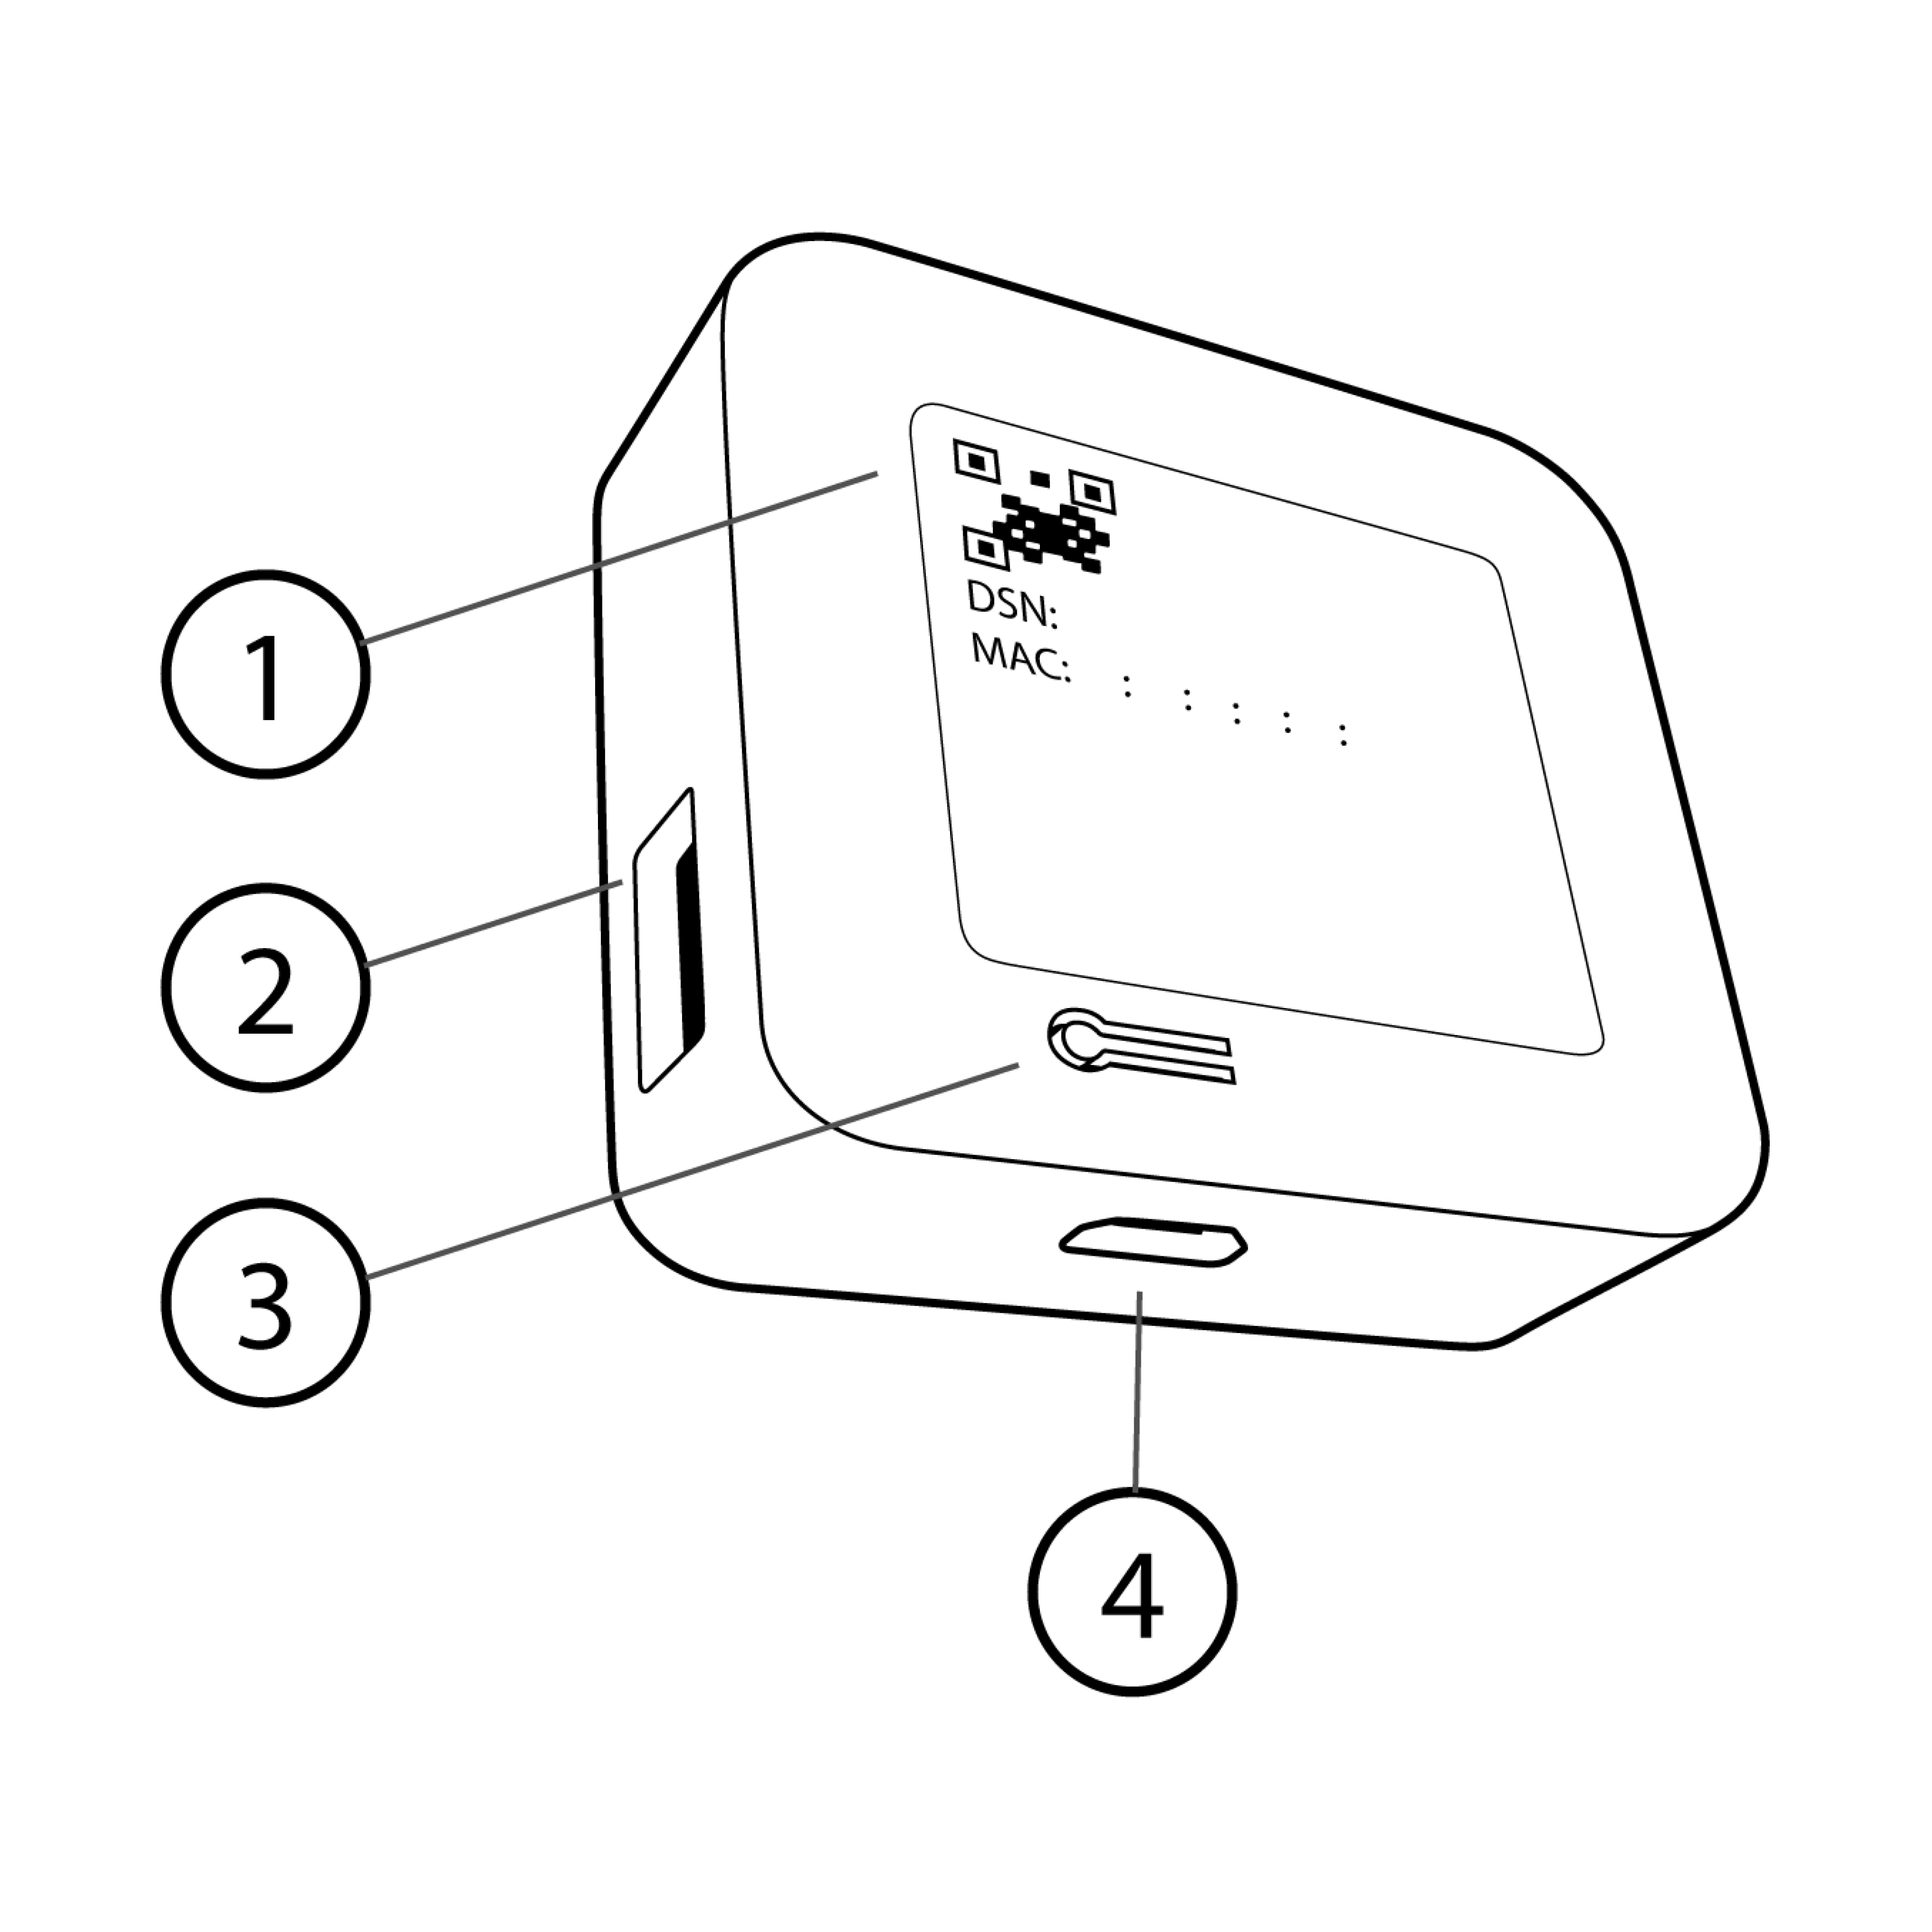 Imagen que muestra un módulo de sincronización con piezas numeradas que incluyen código QR, puerto USB, botón de reinicio y puerto de alimentación.